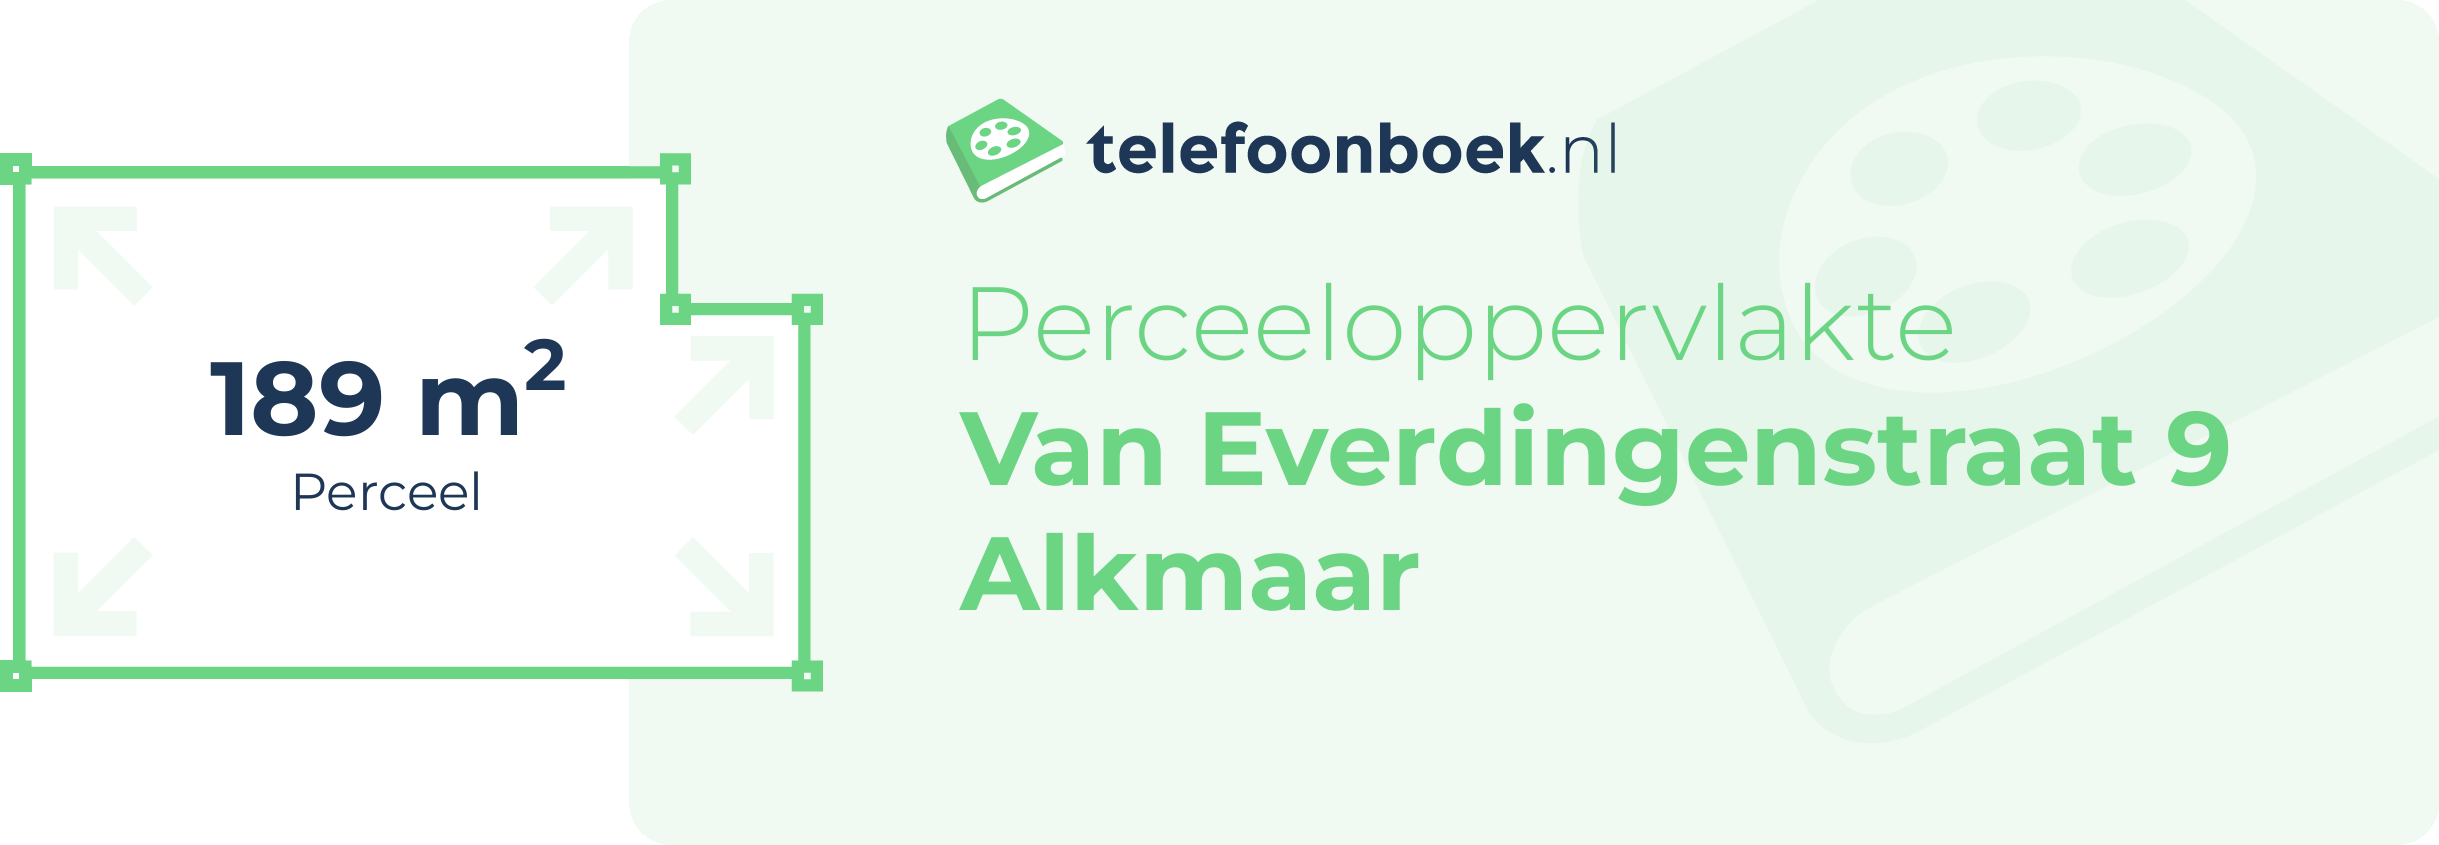 Perceeloppervlakte Van Everdingenstraat 9 Alkmaar